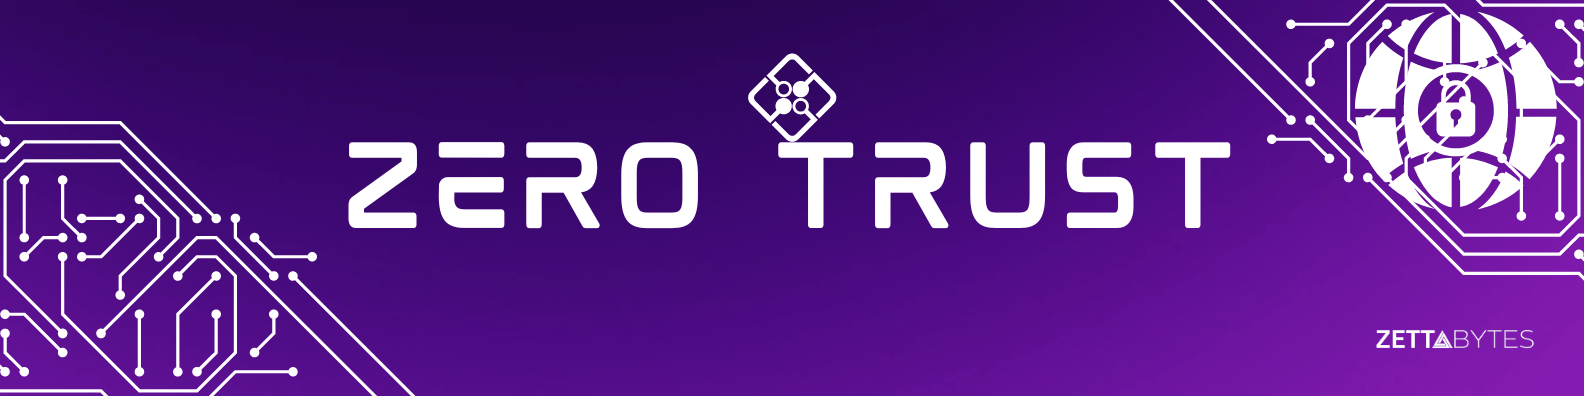 Zero Trust - Threatlocker